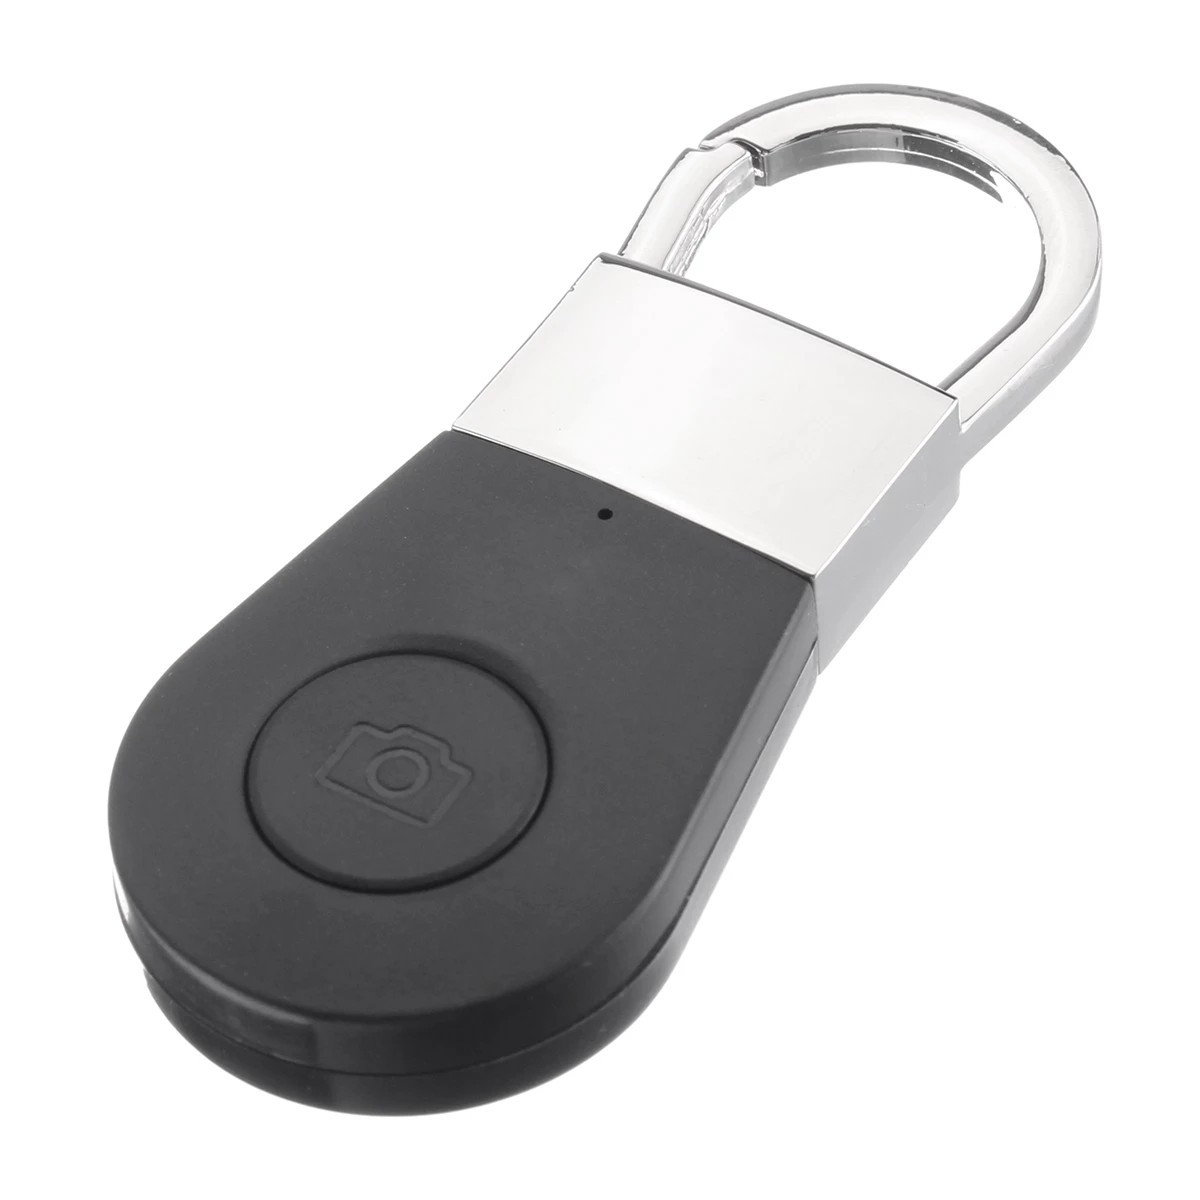 Key finder - bluetooth finder for keys, mobile phone, etc